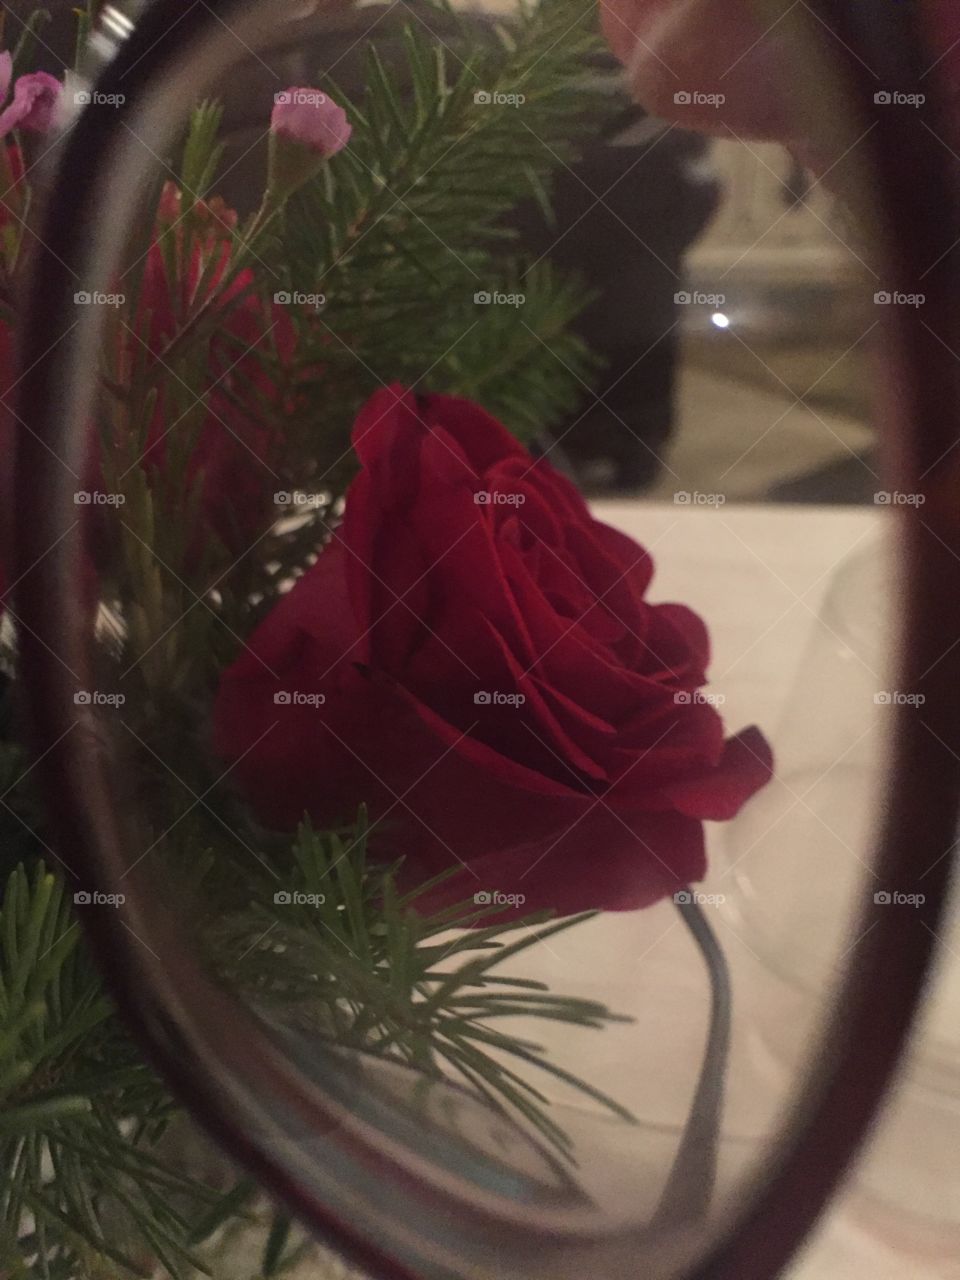 Rose in frame